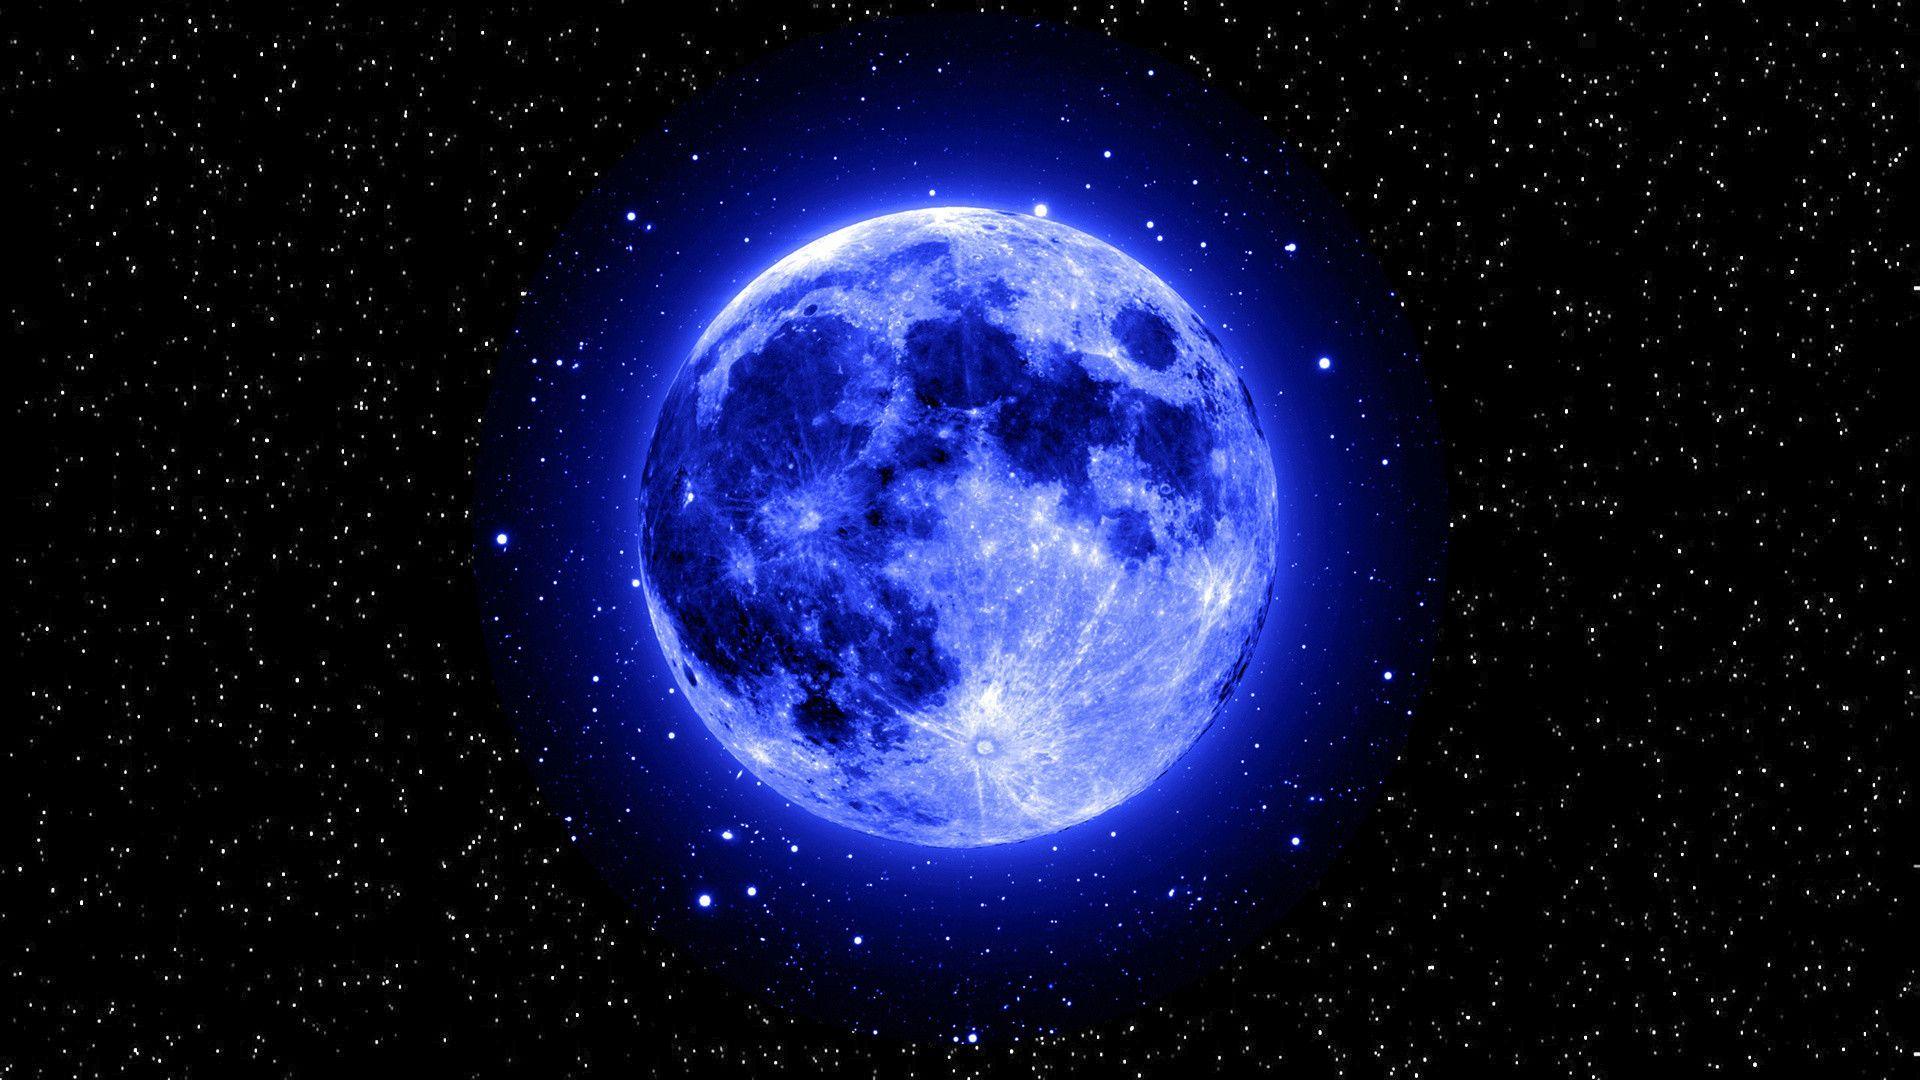 Với hình nền mặt trăng và ngôi sao màu xanh đậm, bạn sẽ được đưa vào thế giới bí ẩn của bầu trời tối và trăng rằm lung linh. Hãy xem chúng ta có thể tìm thấy tình yêu hay truyền cảm hứng từ vẻ đẹp này không.